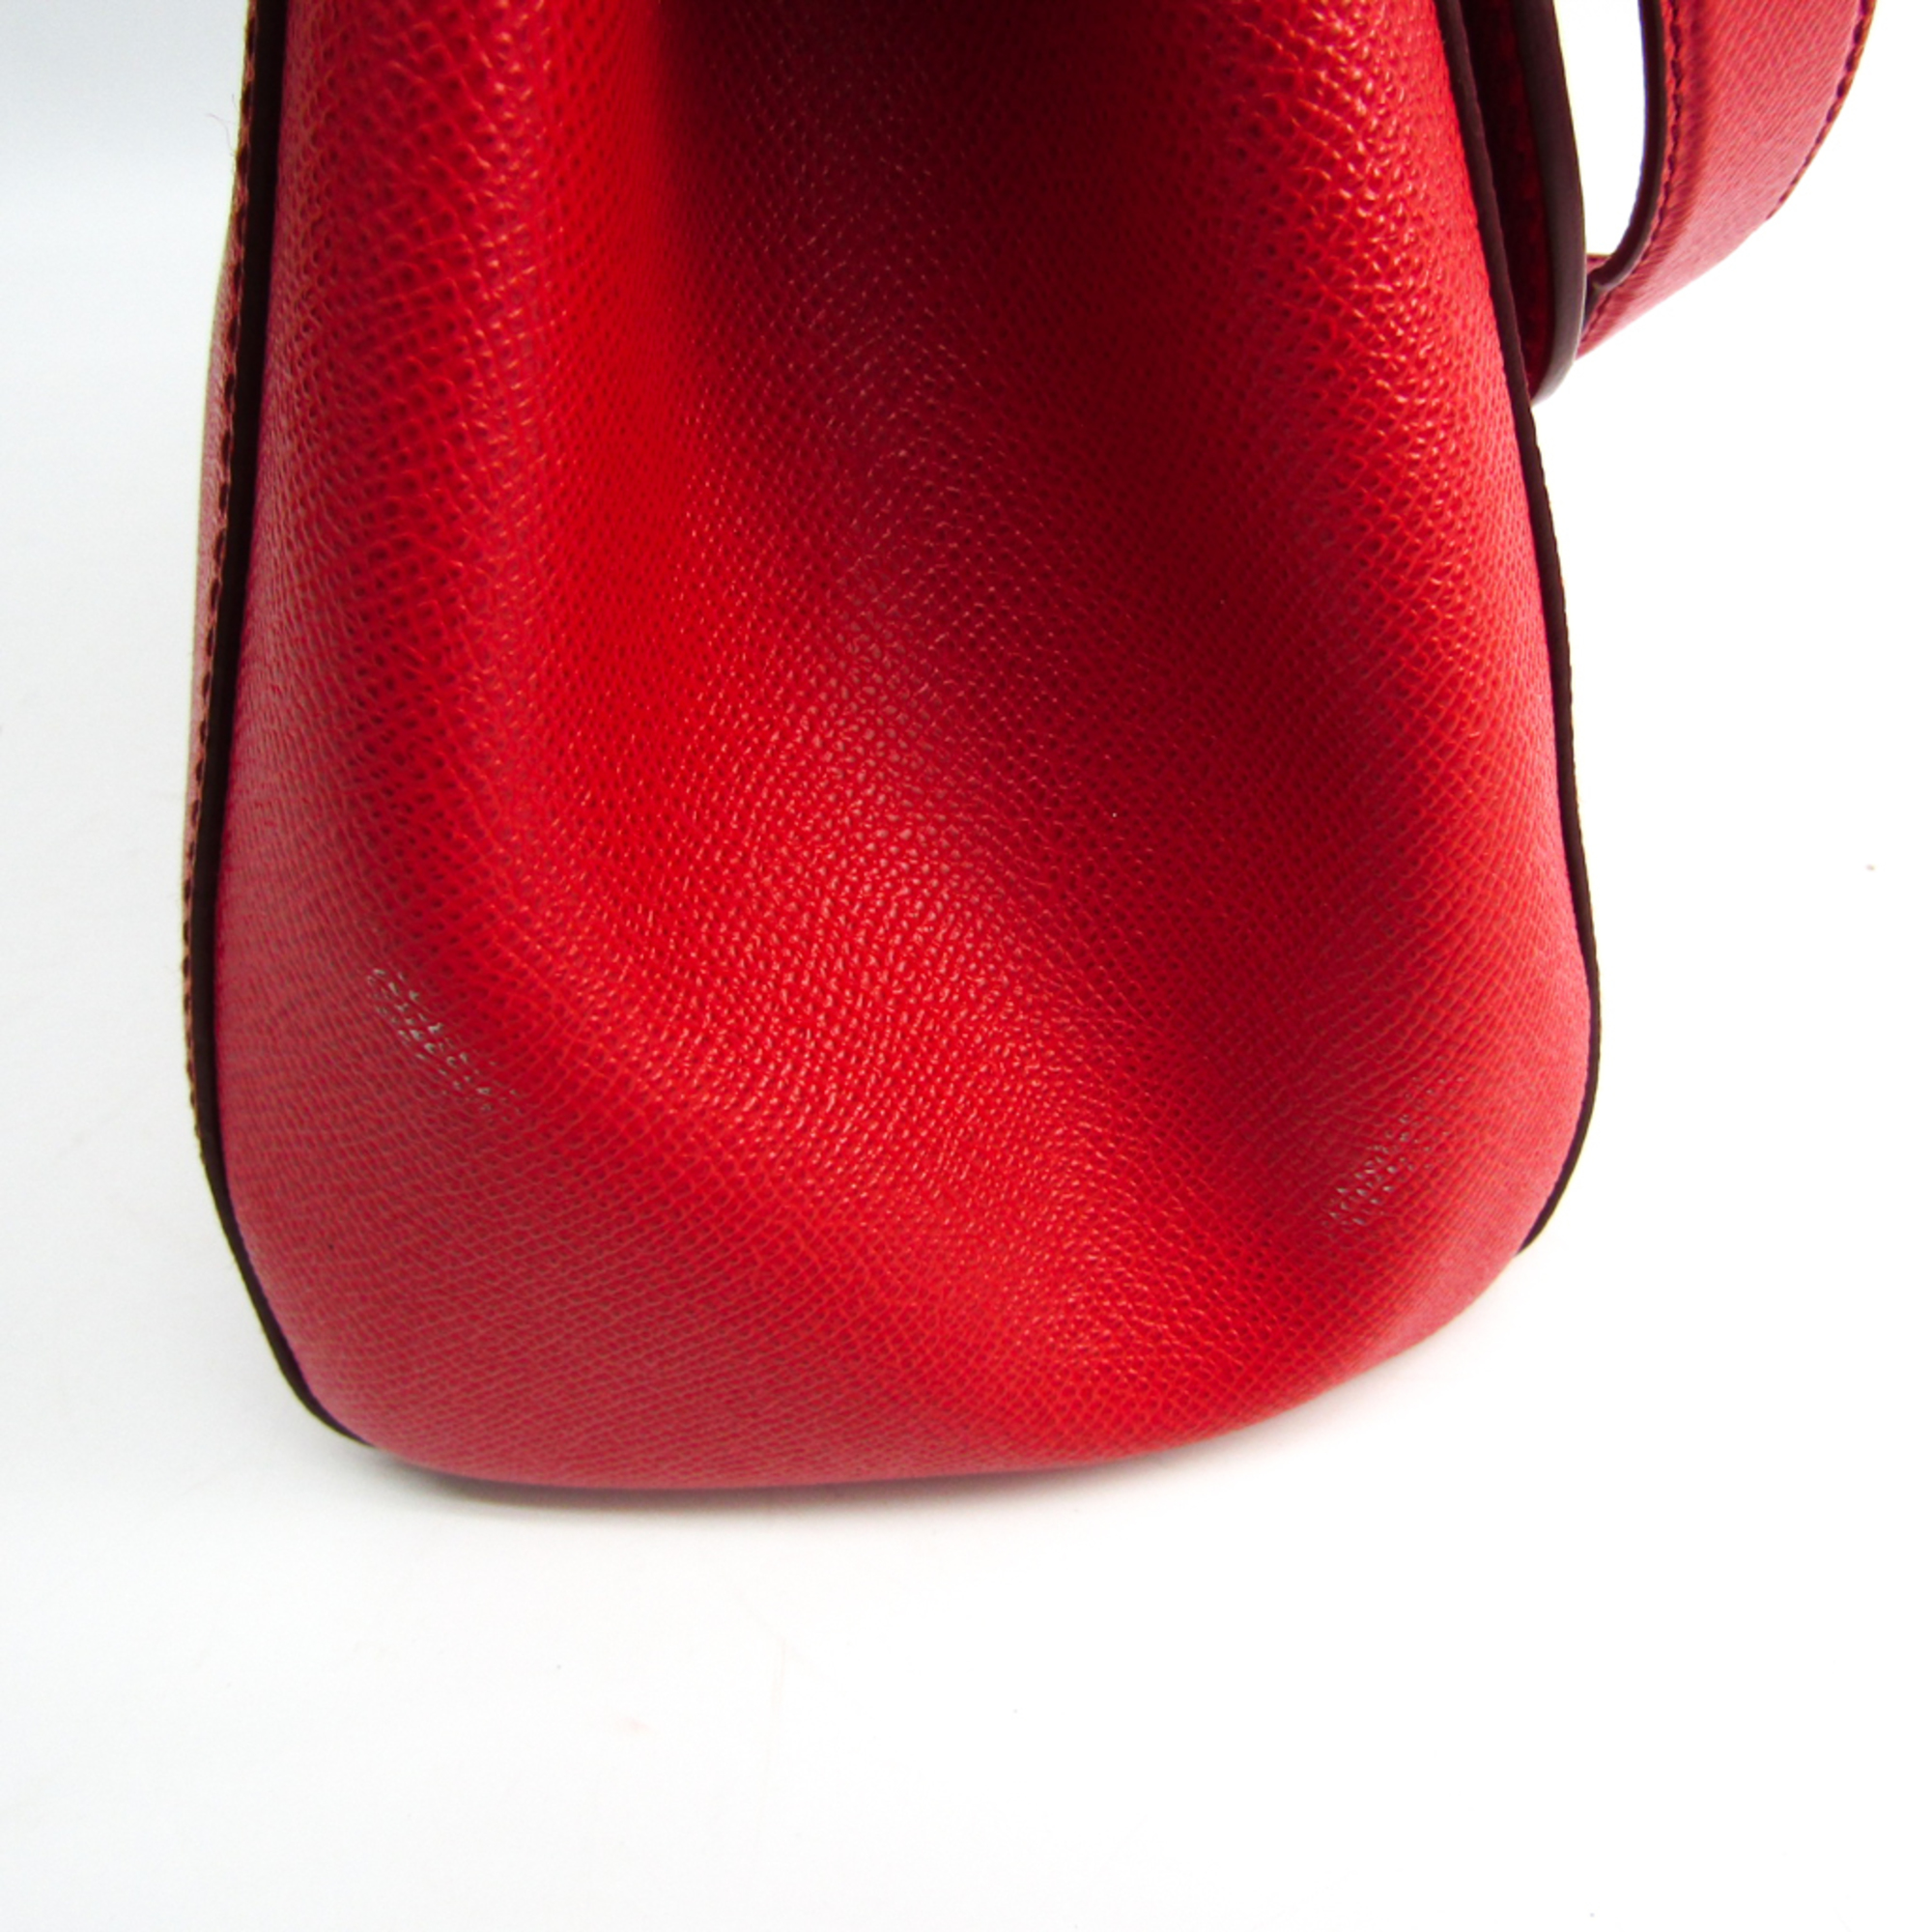 Dolce & Gabbana Sicily Women's Leather Handbag,Shoulder Bag Red Color